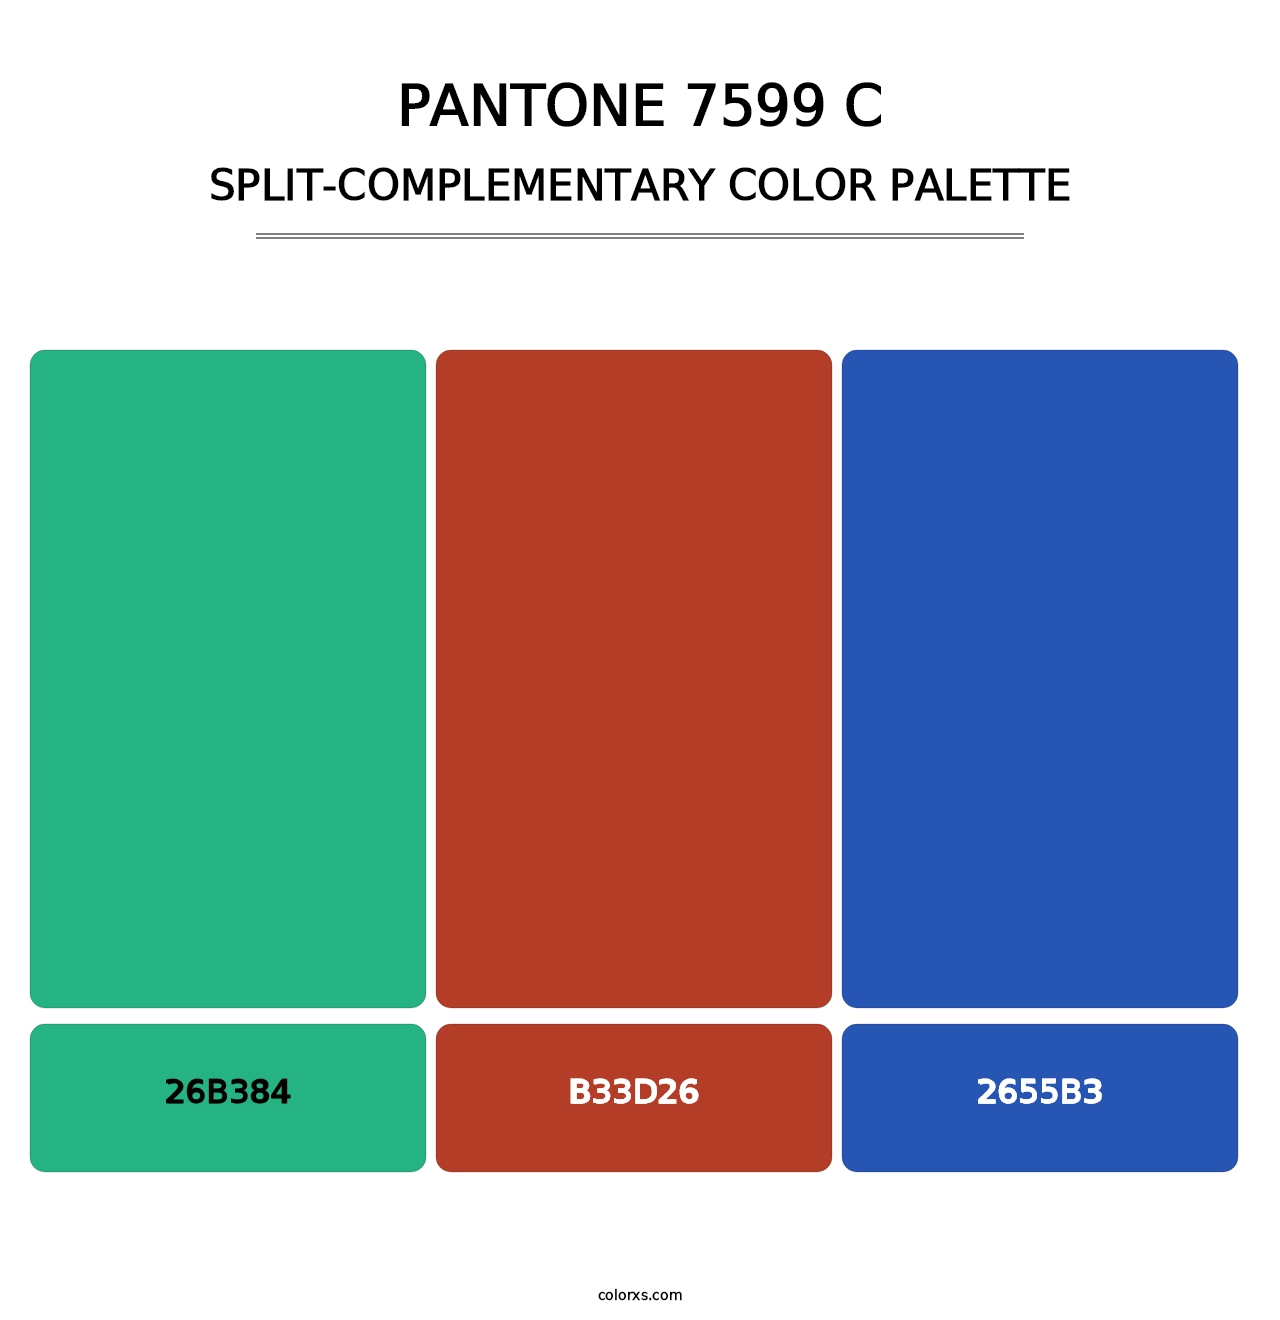 PANTONE 7599 C - Split-Complementary Color Palette